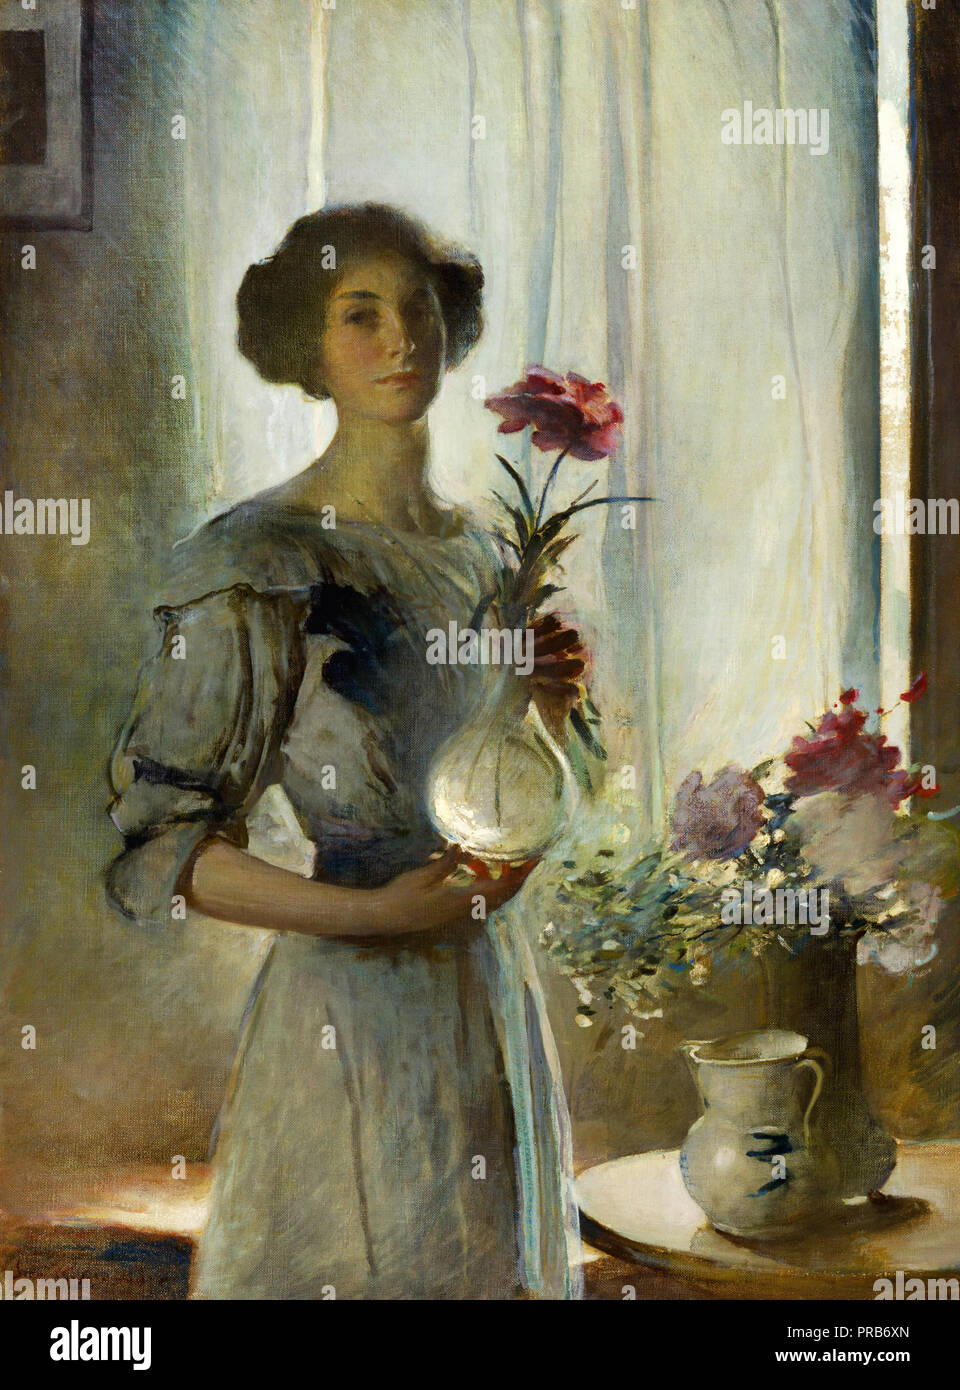 John White Alexander, juin, vers 1911 huile sur toile, Smithsonian American Art Museum, Washington, D.C., USA. Banque D'Images